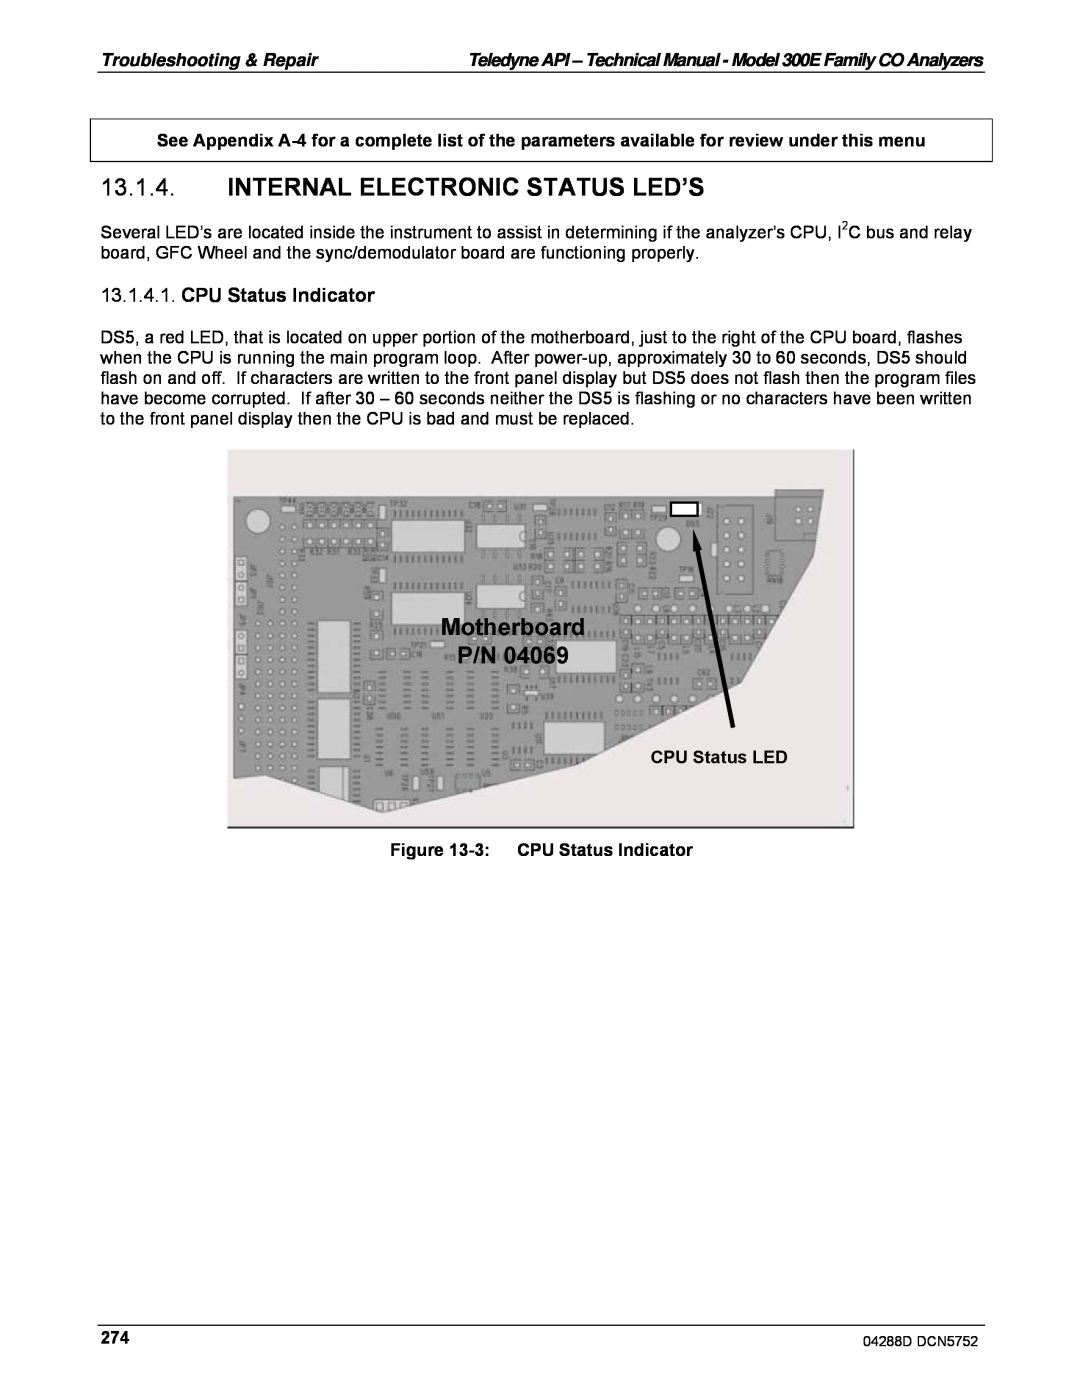 Teledyne M300EM operation manual Internal Electronic Status Led’S, Motherboard P/N, CPU Status Indicator 